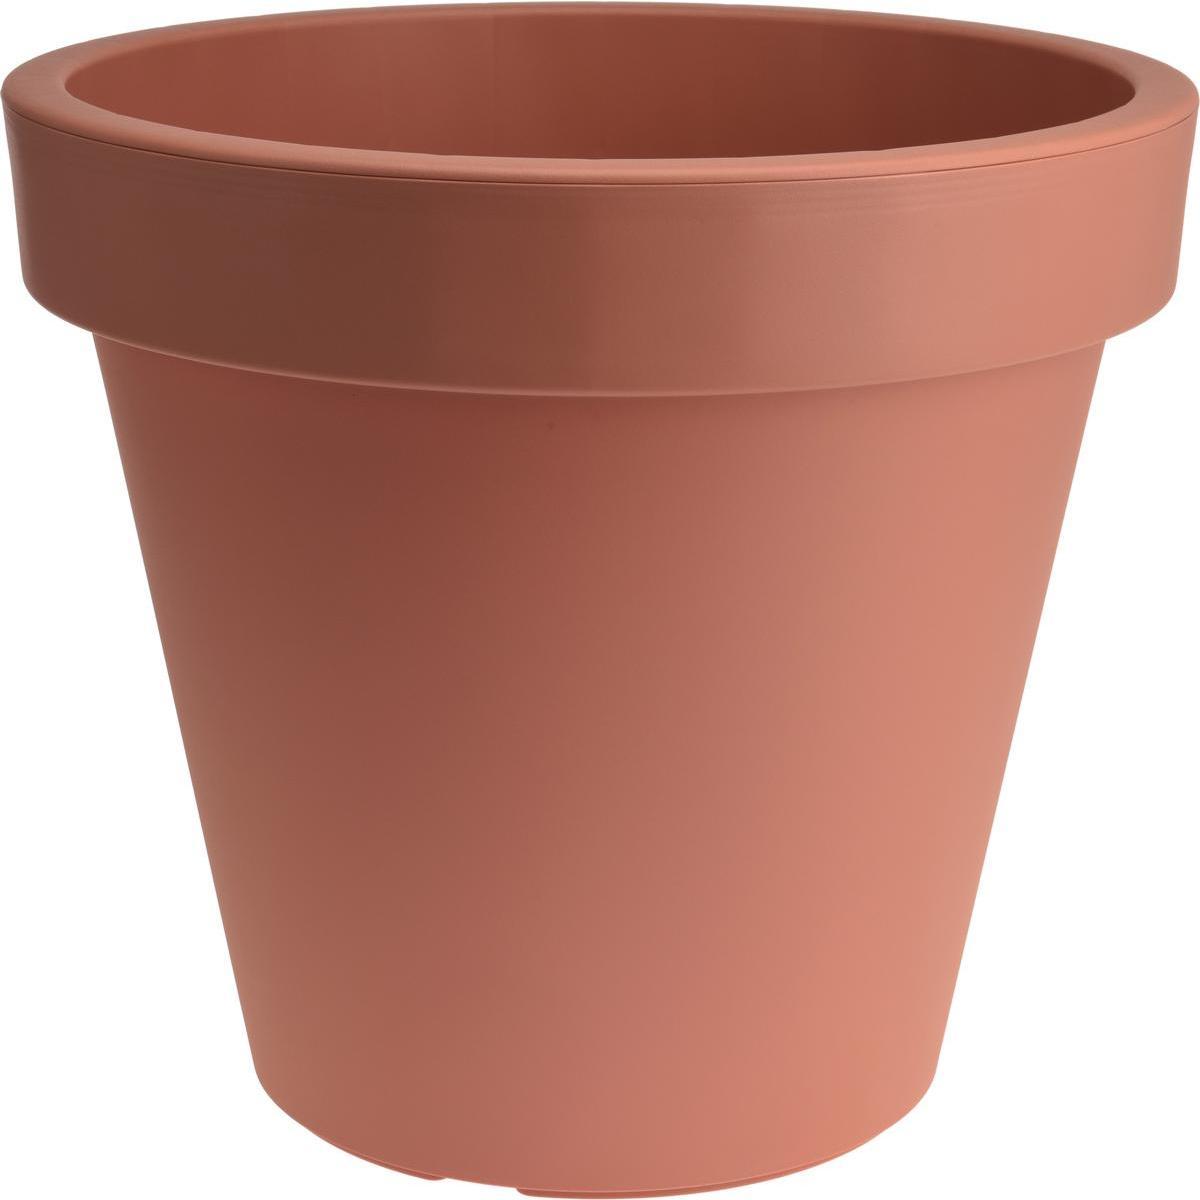 Pot de fleurs terracotta rond - Différents modèles - ø 58 x H 52 cm - Rouge terre